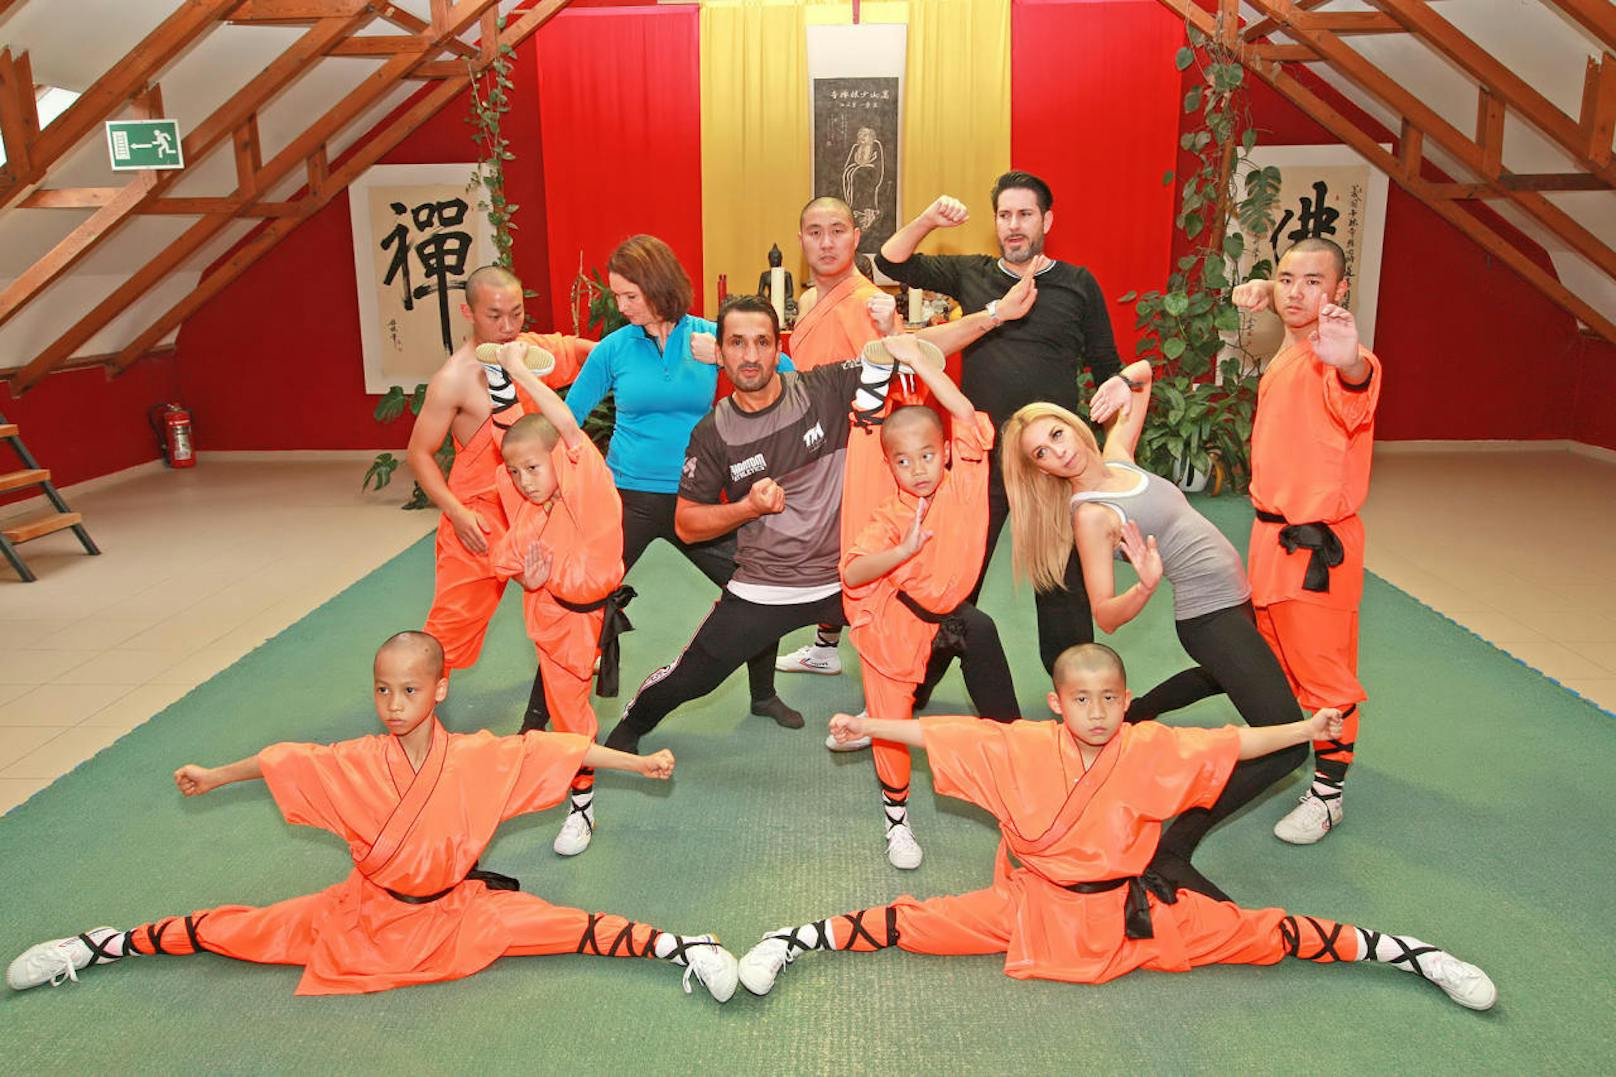 Promis trainieren mit Shaolin-Mönchen